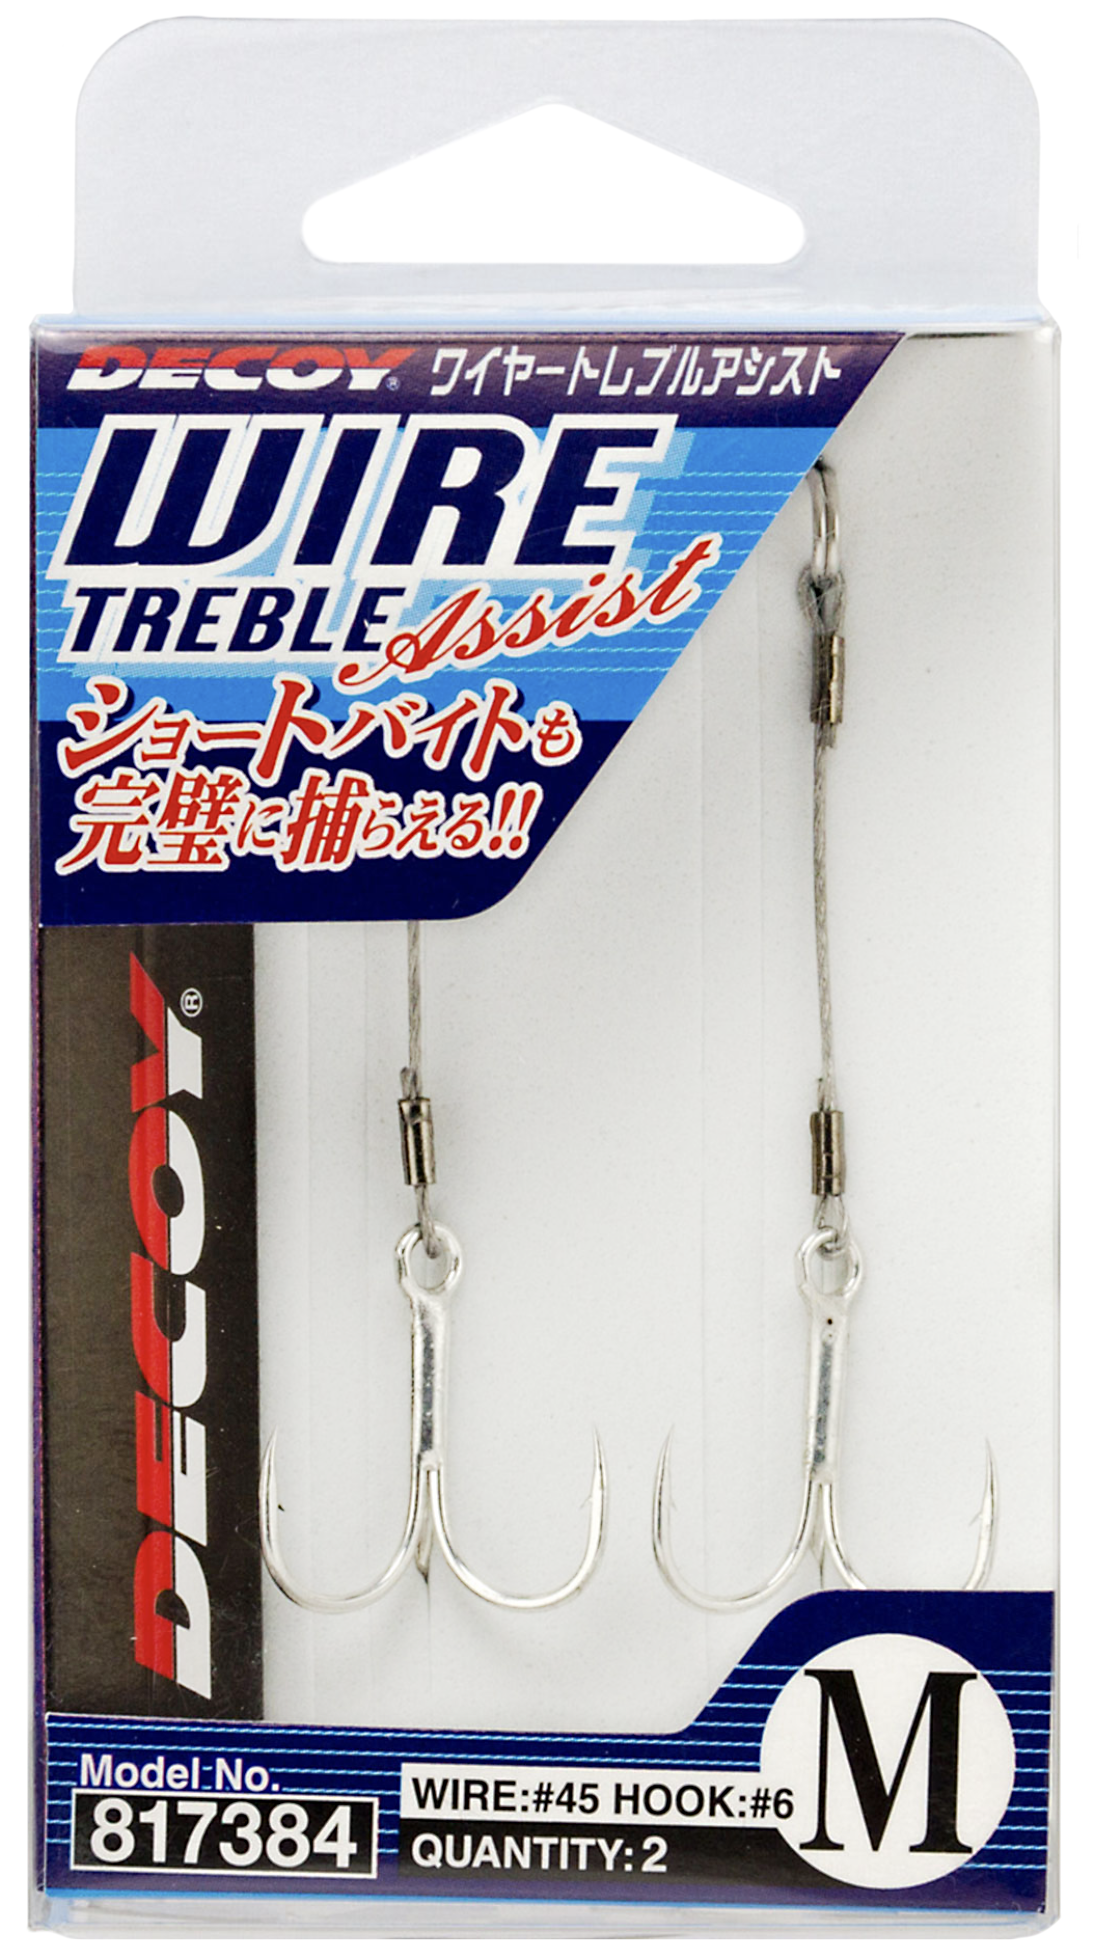 Decoy WA-21 Wire Treble Trailer Hook